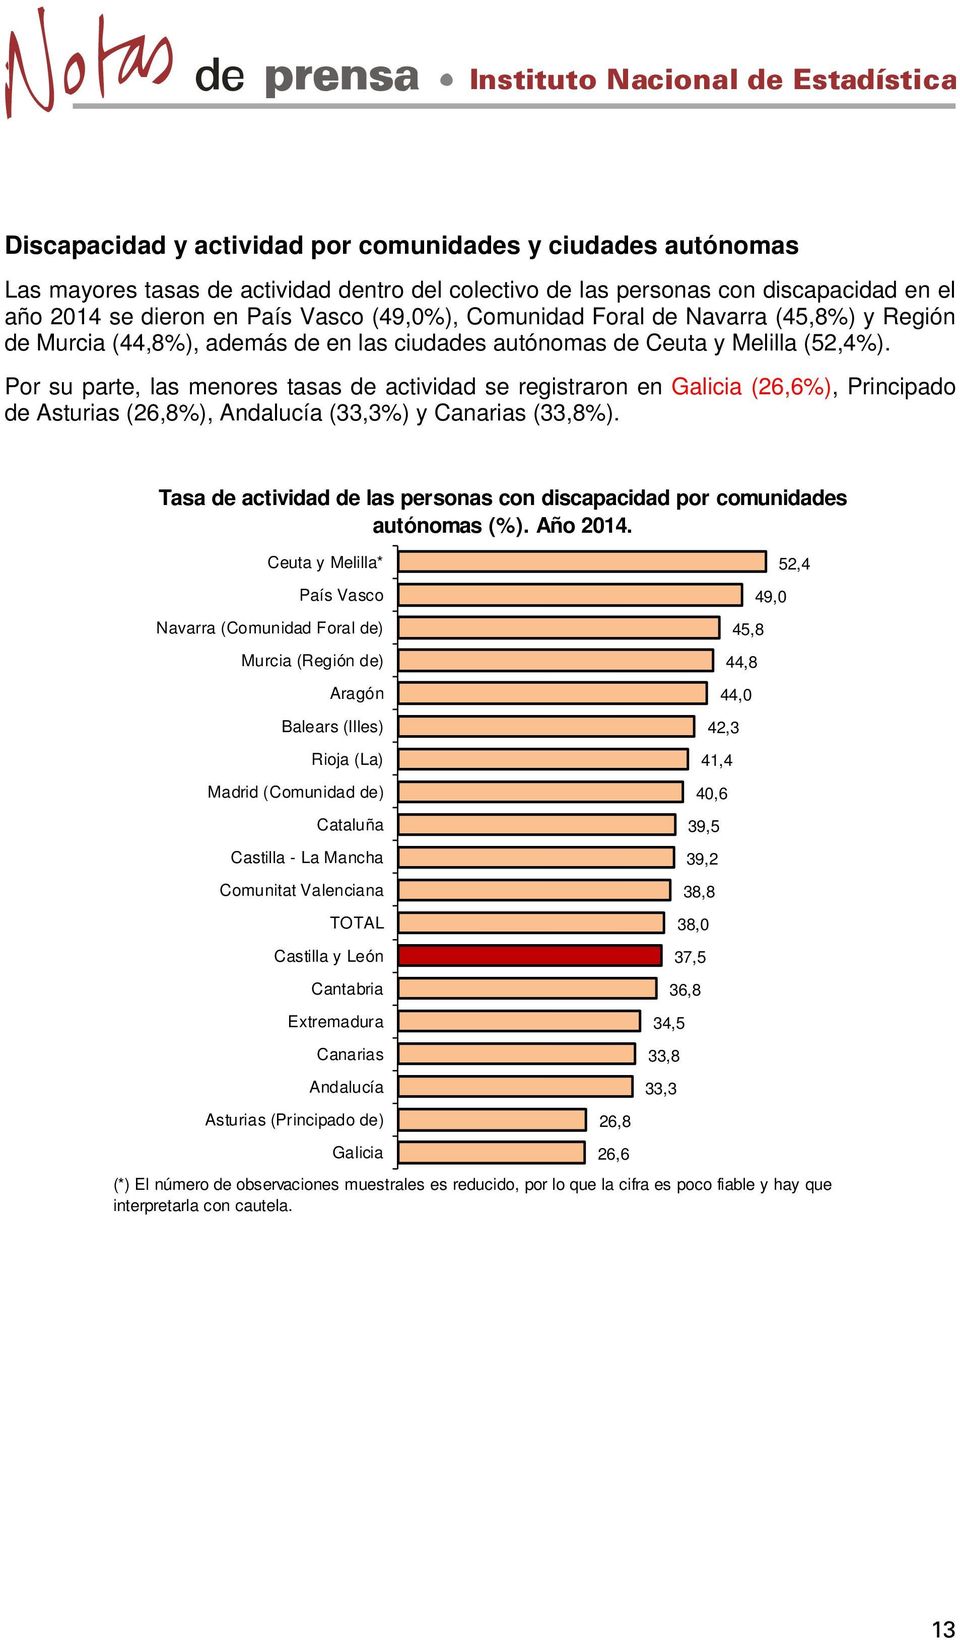 Por su parte, las menores tasas de actividad se registraron en Galicia (26,6%), Principado de Asturias (26,8%), Andalucía (33,3%) y Canarias (33,8%).